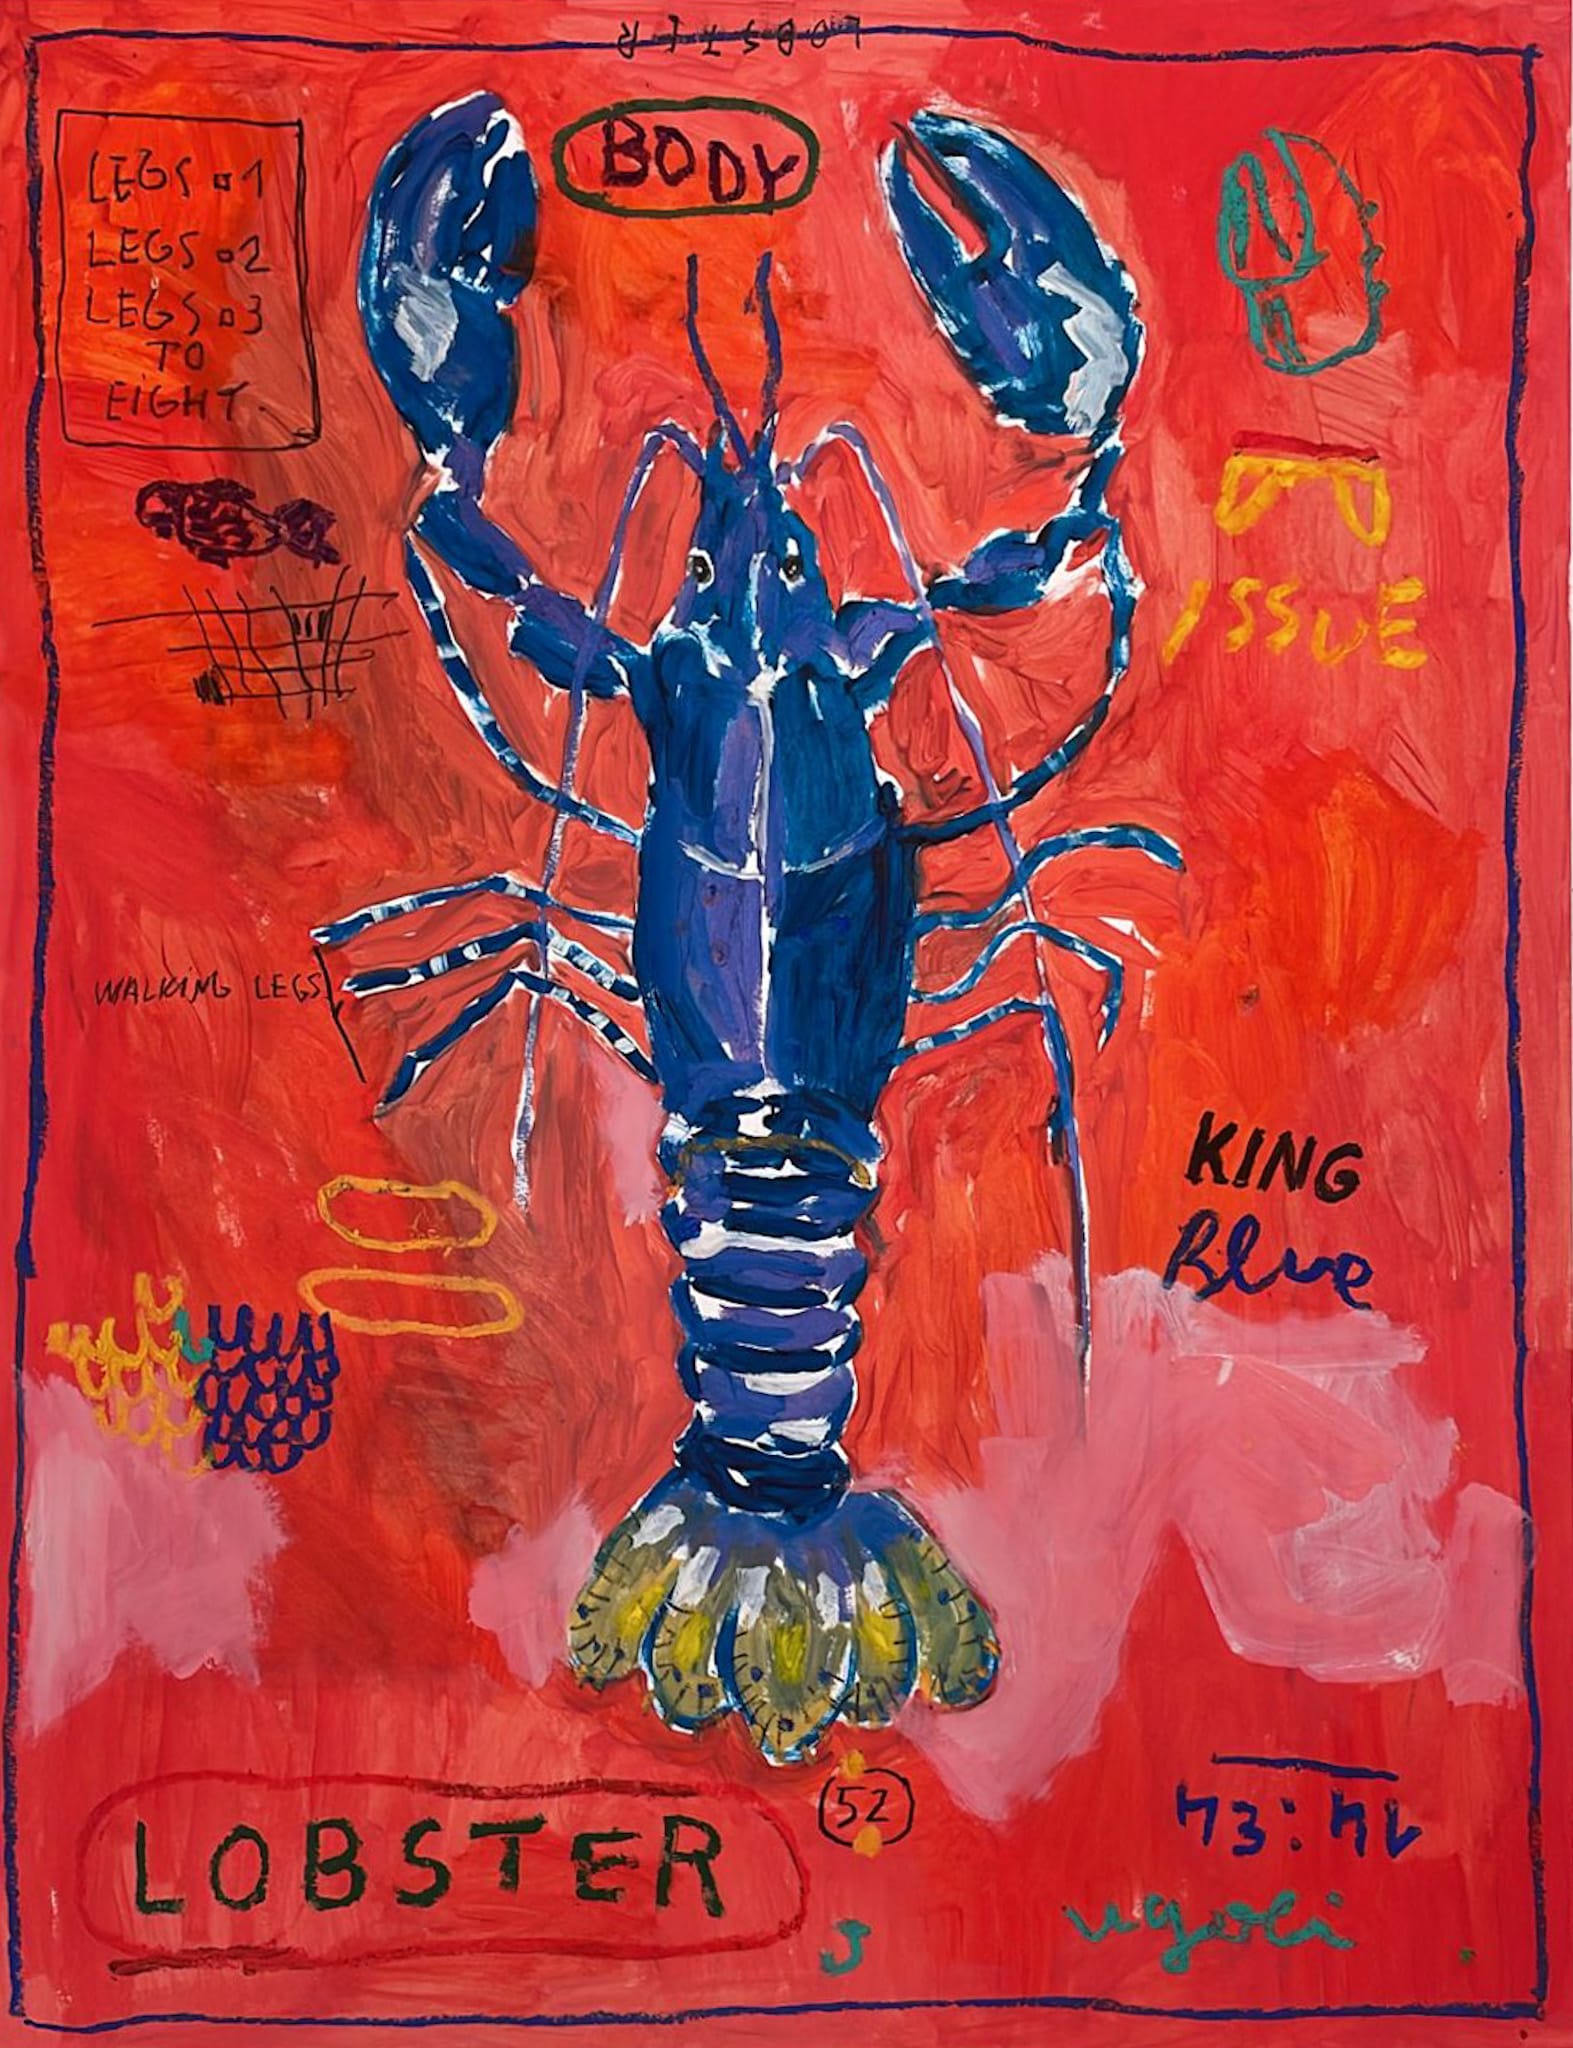 Lobster #52 by Ugo Li